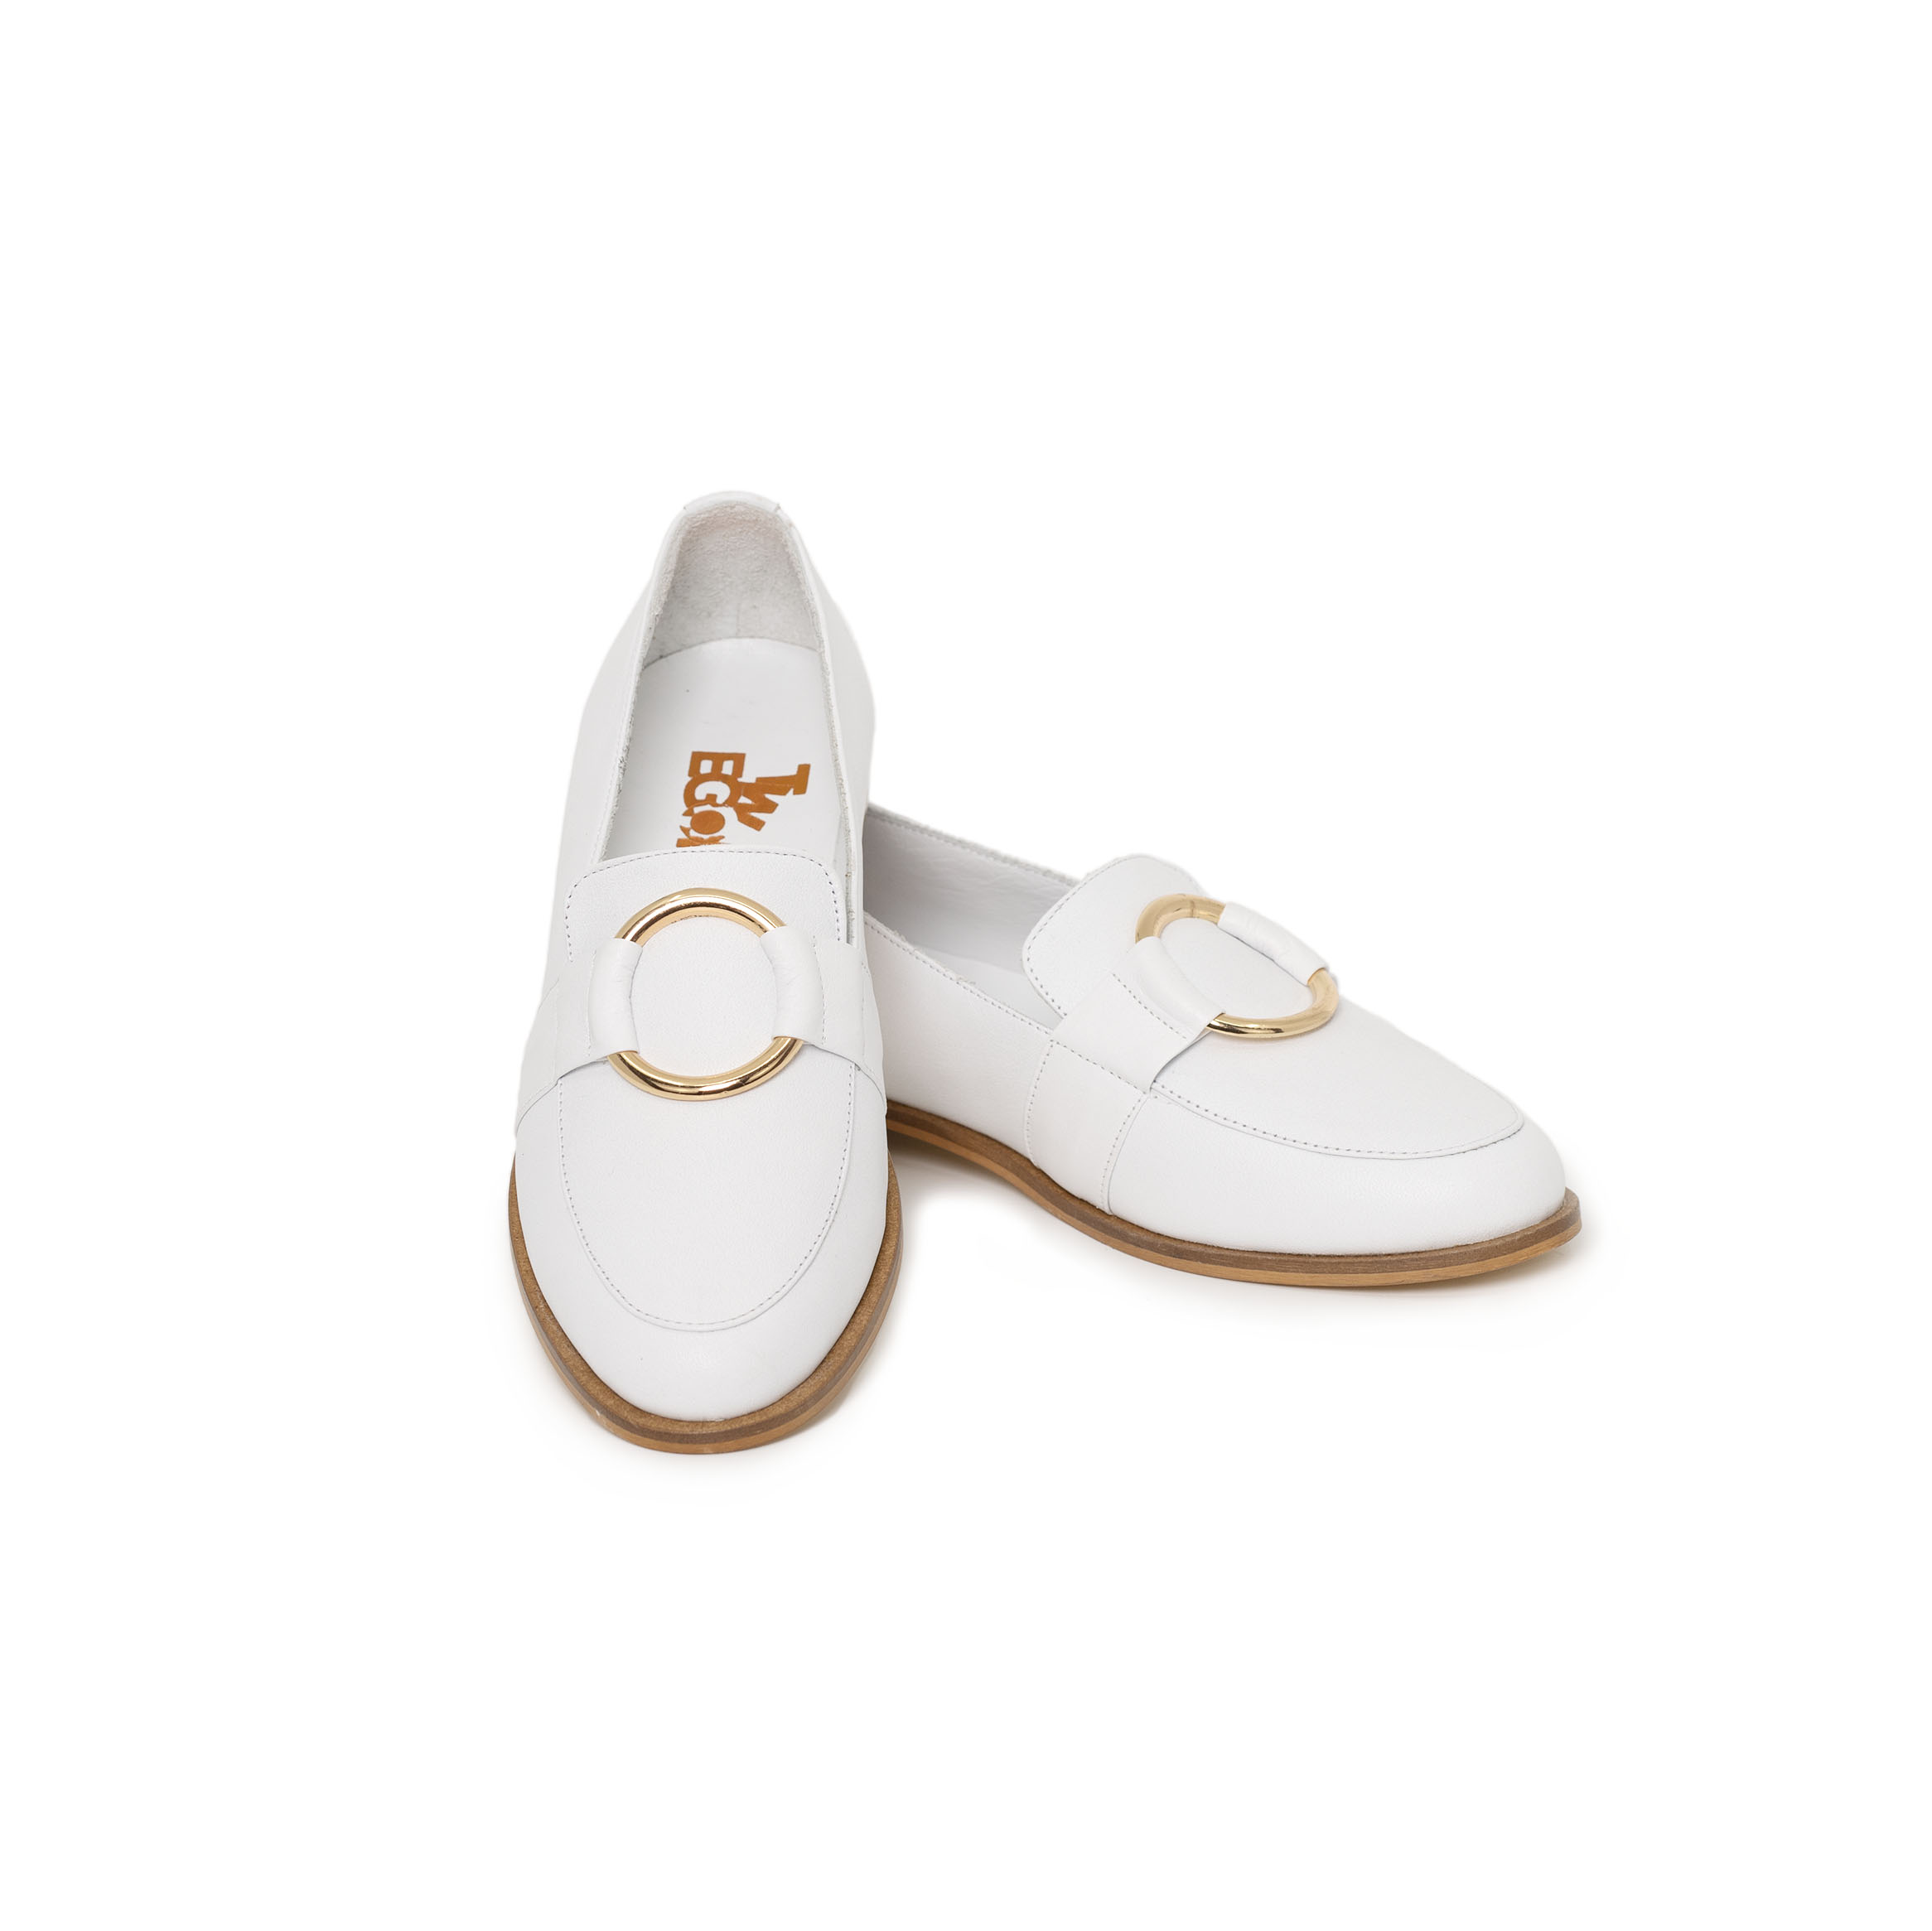 TwoEgoist Kadın Hakiki Deri Günlük Şık Klasik Loafer Babet Ayakkabı Beyaz, Renk: Beyaz, Beden: 39